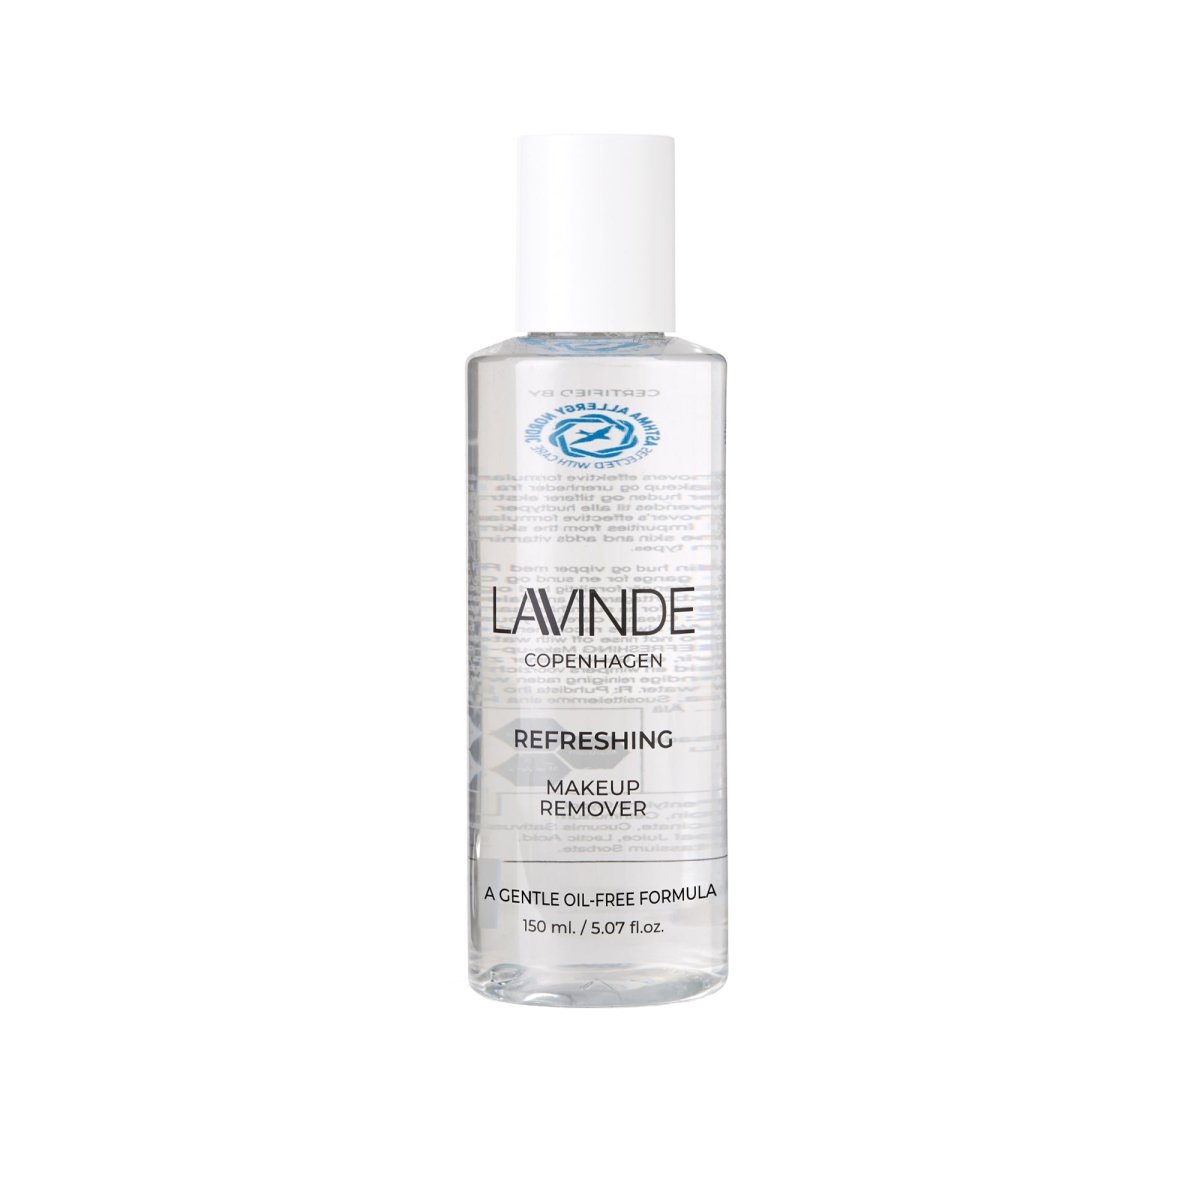 Billede af Lavinde Refreshing Makeup Remover, 150ml - Lavinde Copenhagen - Cosmetics - Buump